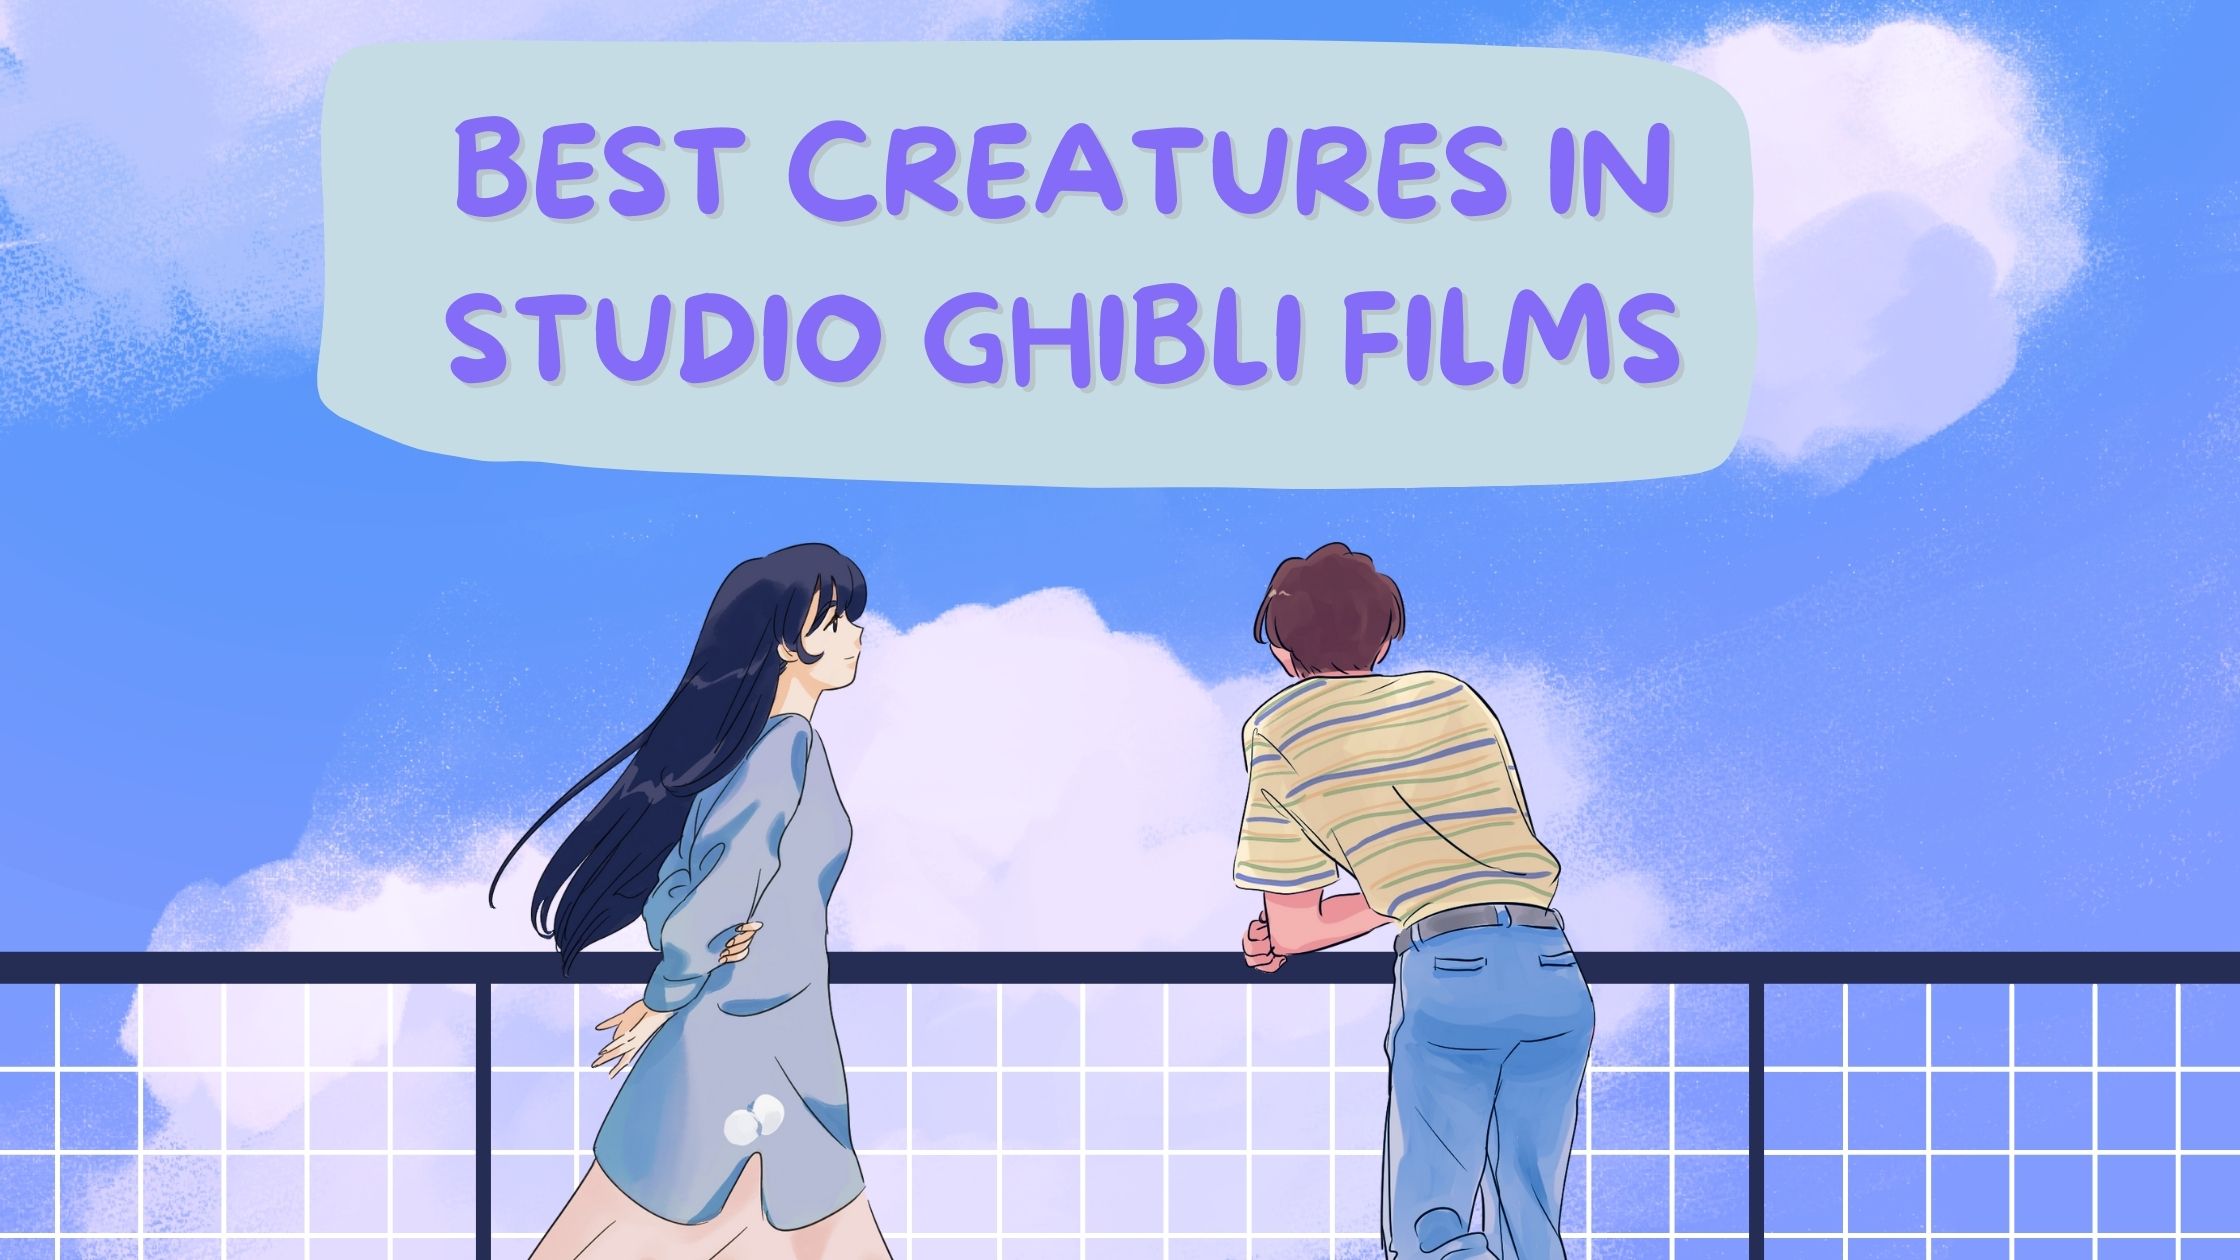 Best creatures in Studio Ghibli films